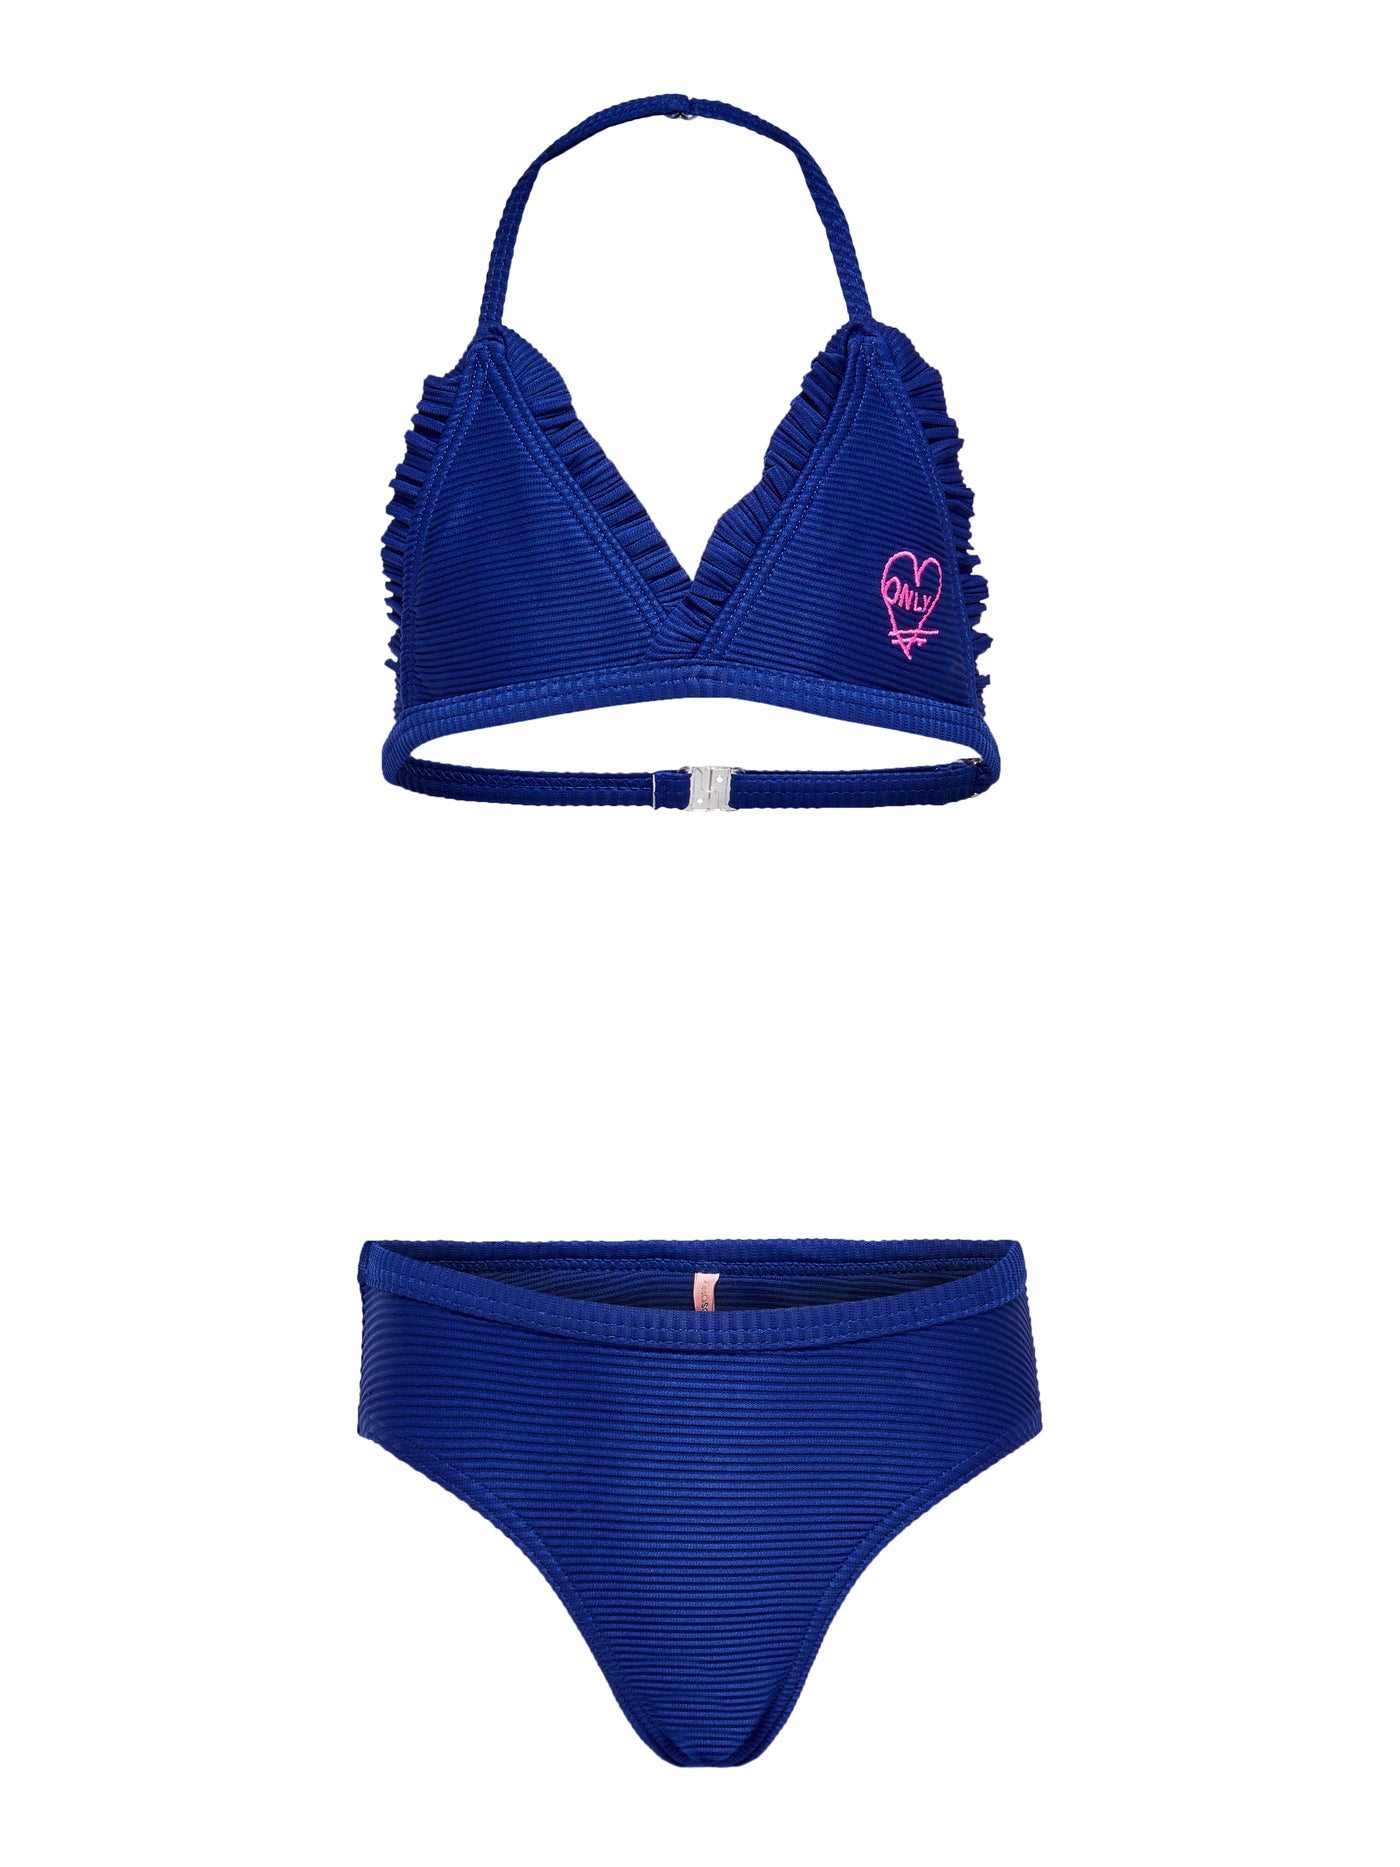 Konmynte bikini set - BLUE